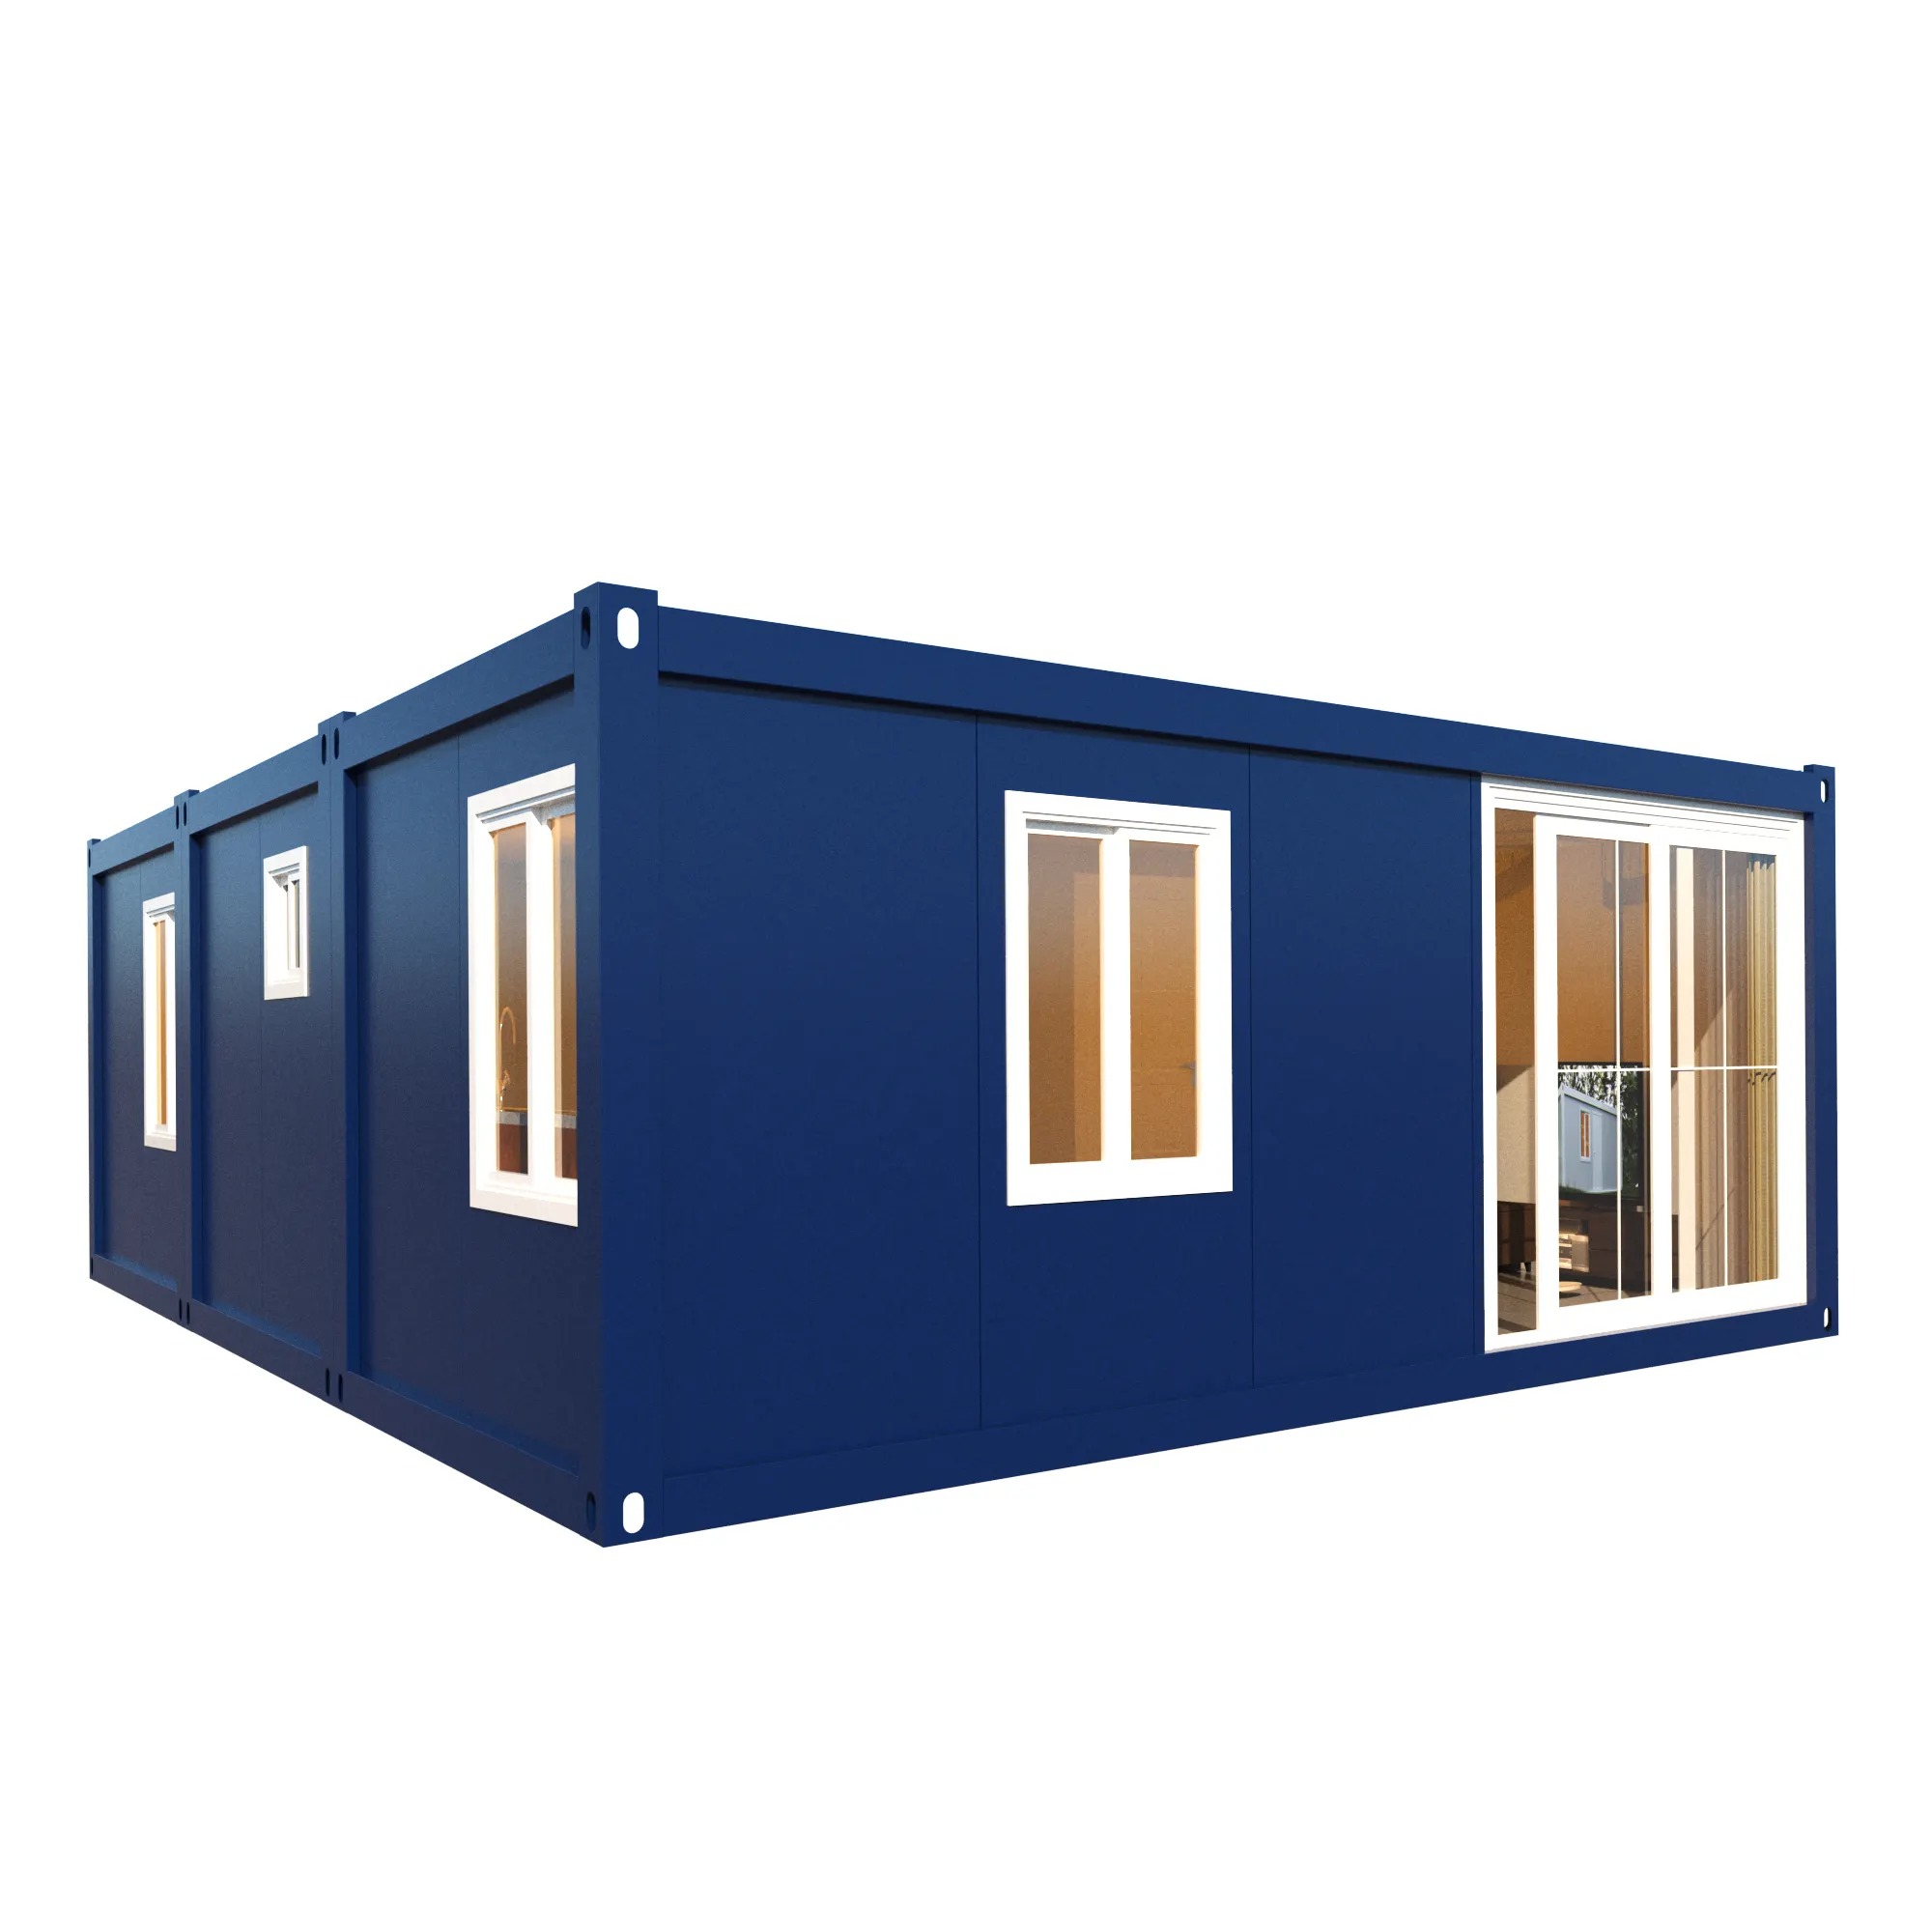 Mobile kombinierte hergestellte Solar container häuser 40ft Luxus kleines Haus vorgefertigt